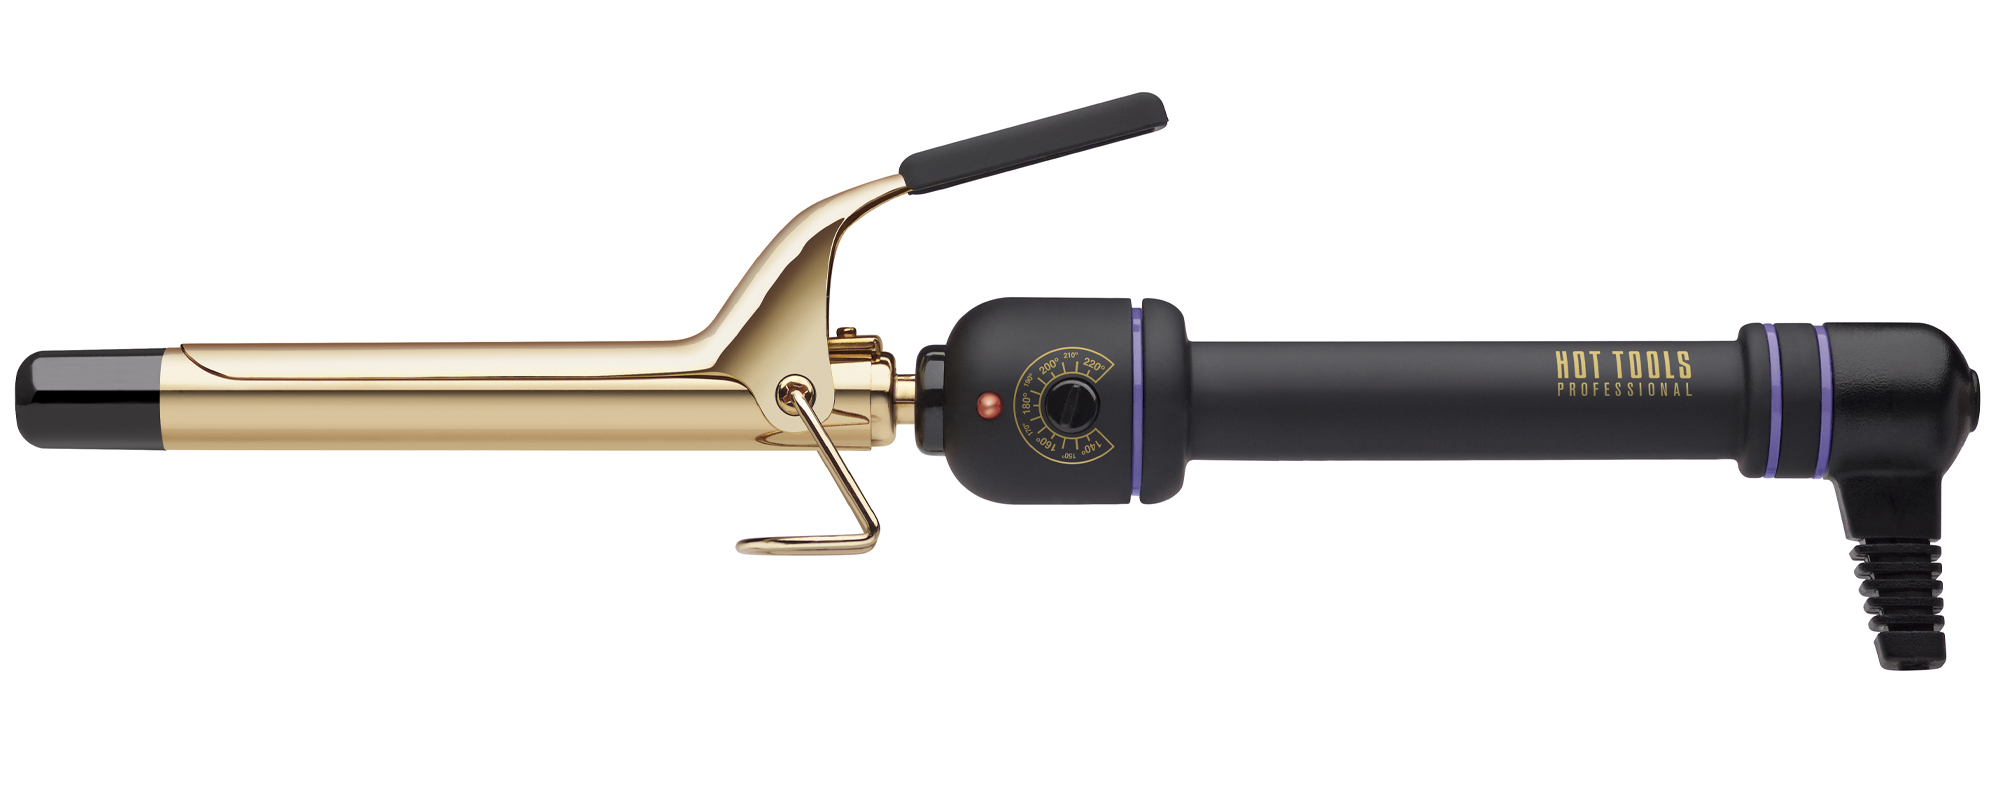 Хот Тулс Профешнл Стайлер 24K Gold, 19 мм (Hot Tools Professional, 24K Gold Salon Curling Irons) фото 0